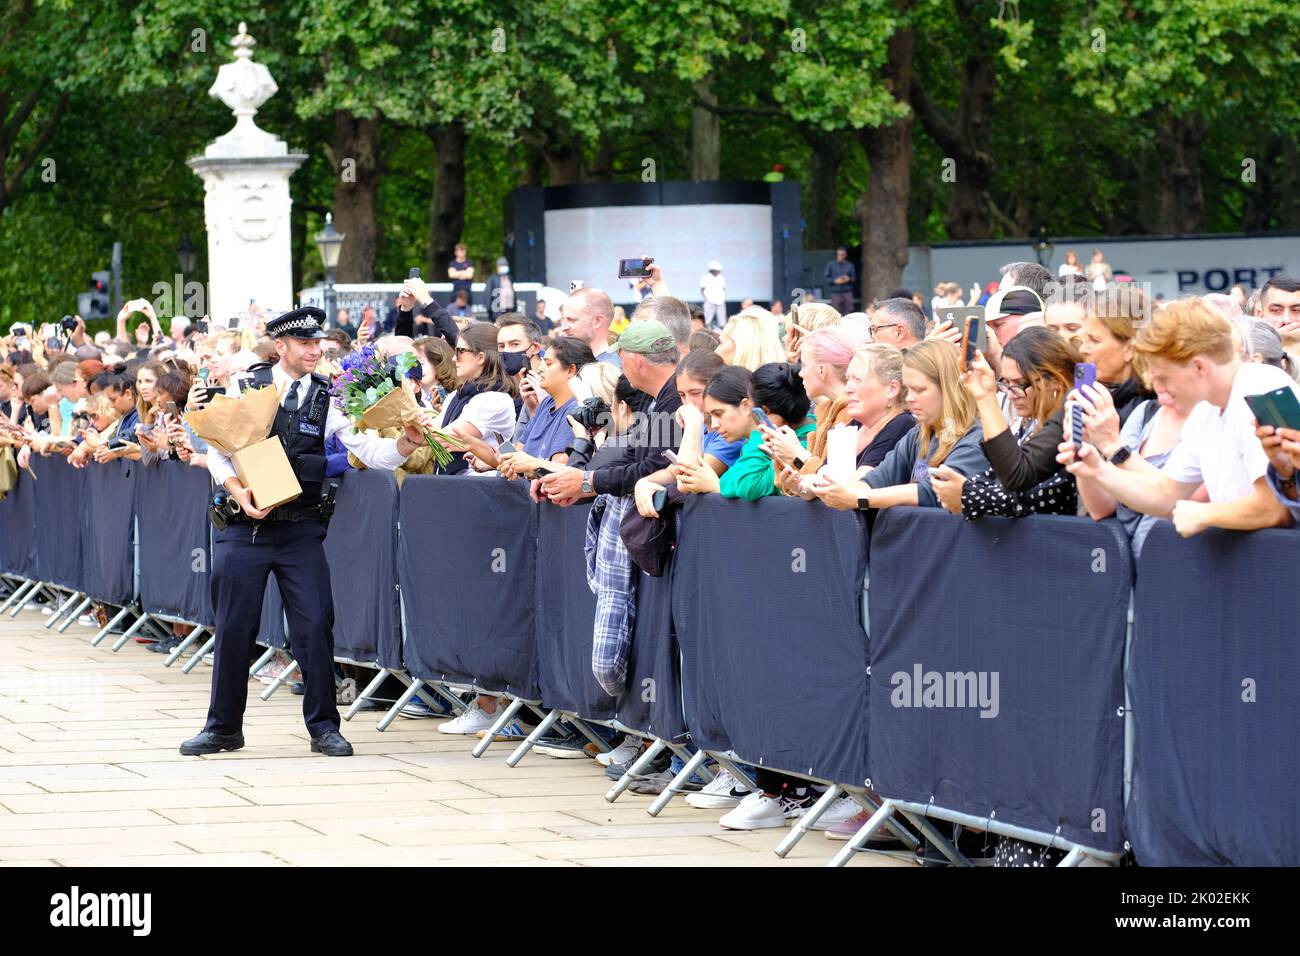 Buckingham Palace, Londres, Royaume-Uni – vendredi 9th septembre 2022 – Un policier reçoit des fleurs transmises par la grande foule devant Buckingham Palace alors que le public pleure la mort de la reine Elizabeth II hier. Photo Steven May / Alamy Live News Banque D'Images